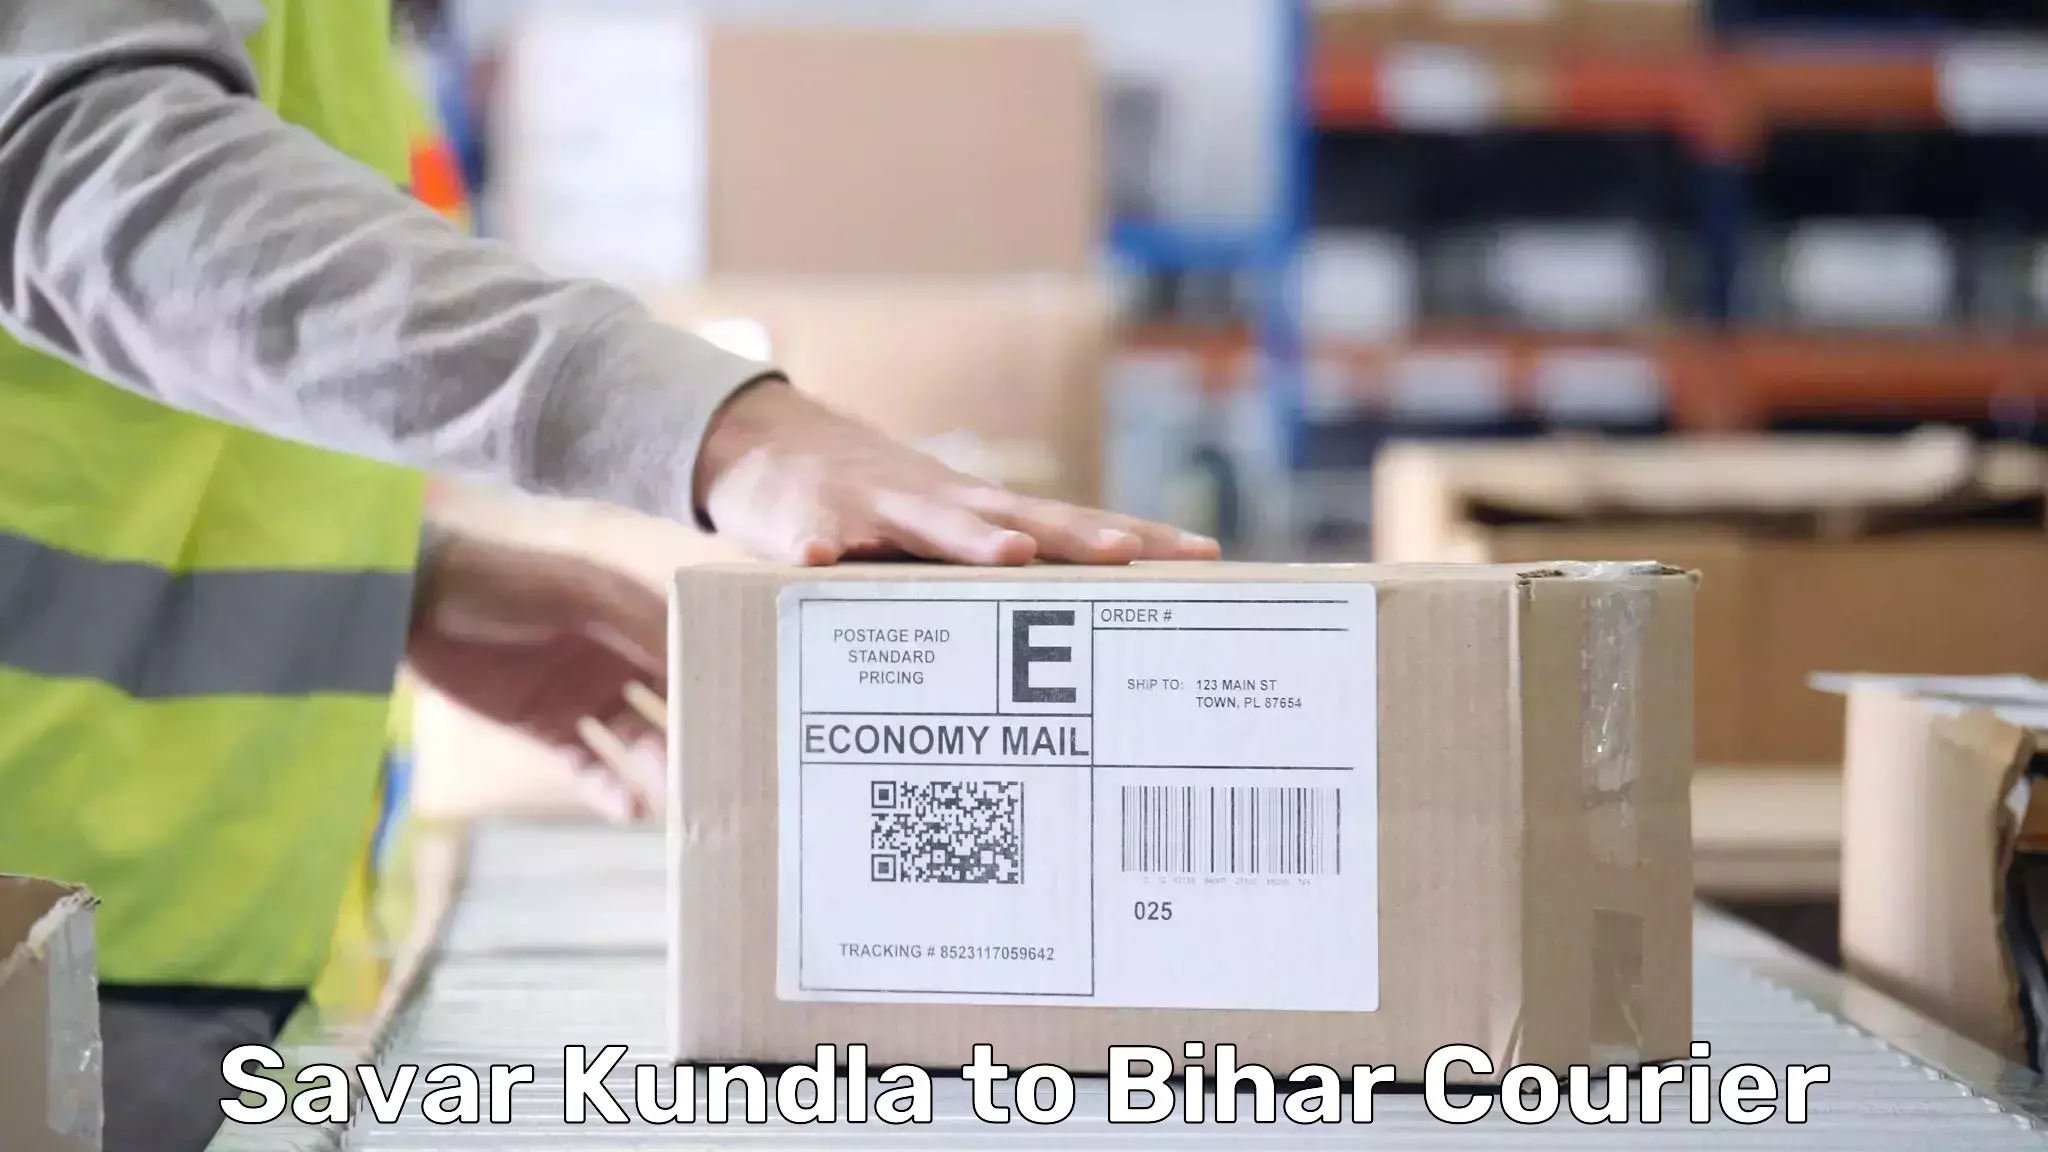 Baggage delivery solutions Savar Kundla to Jiwdhara